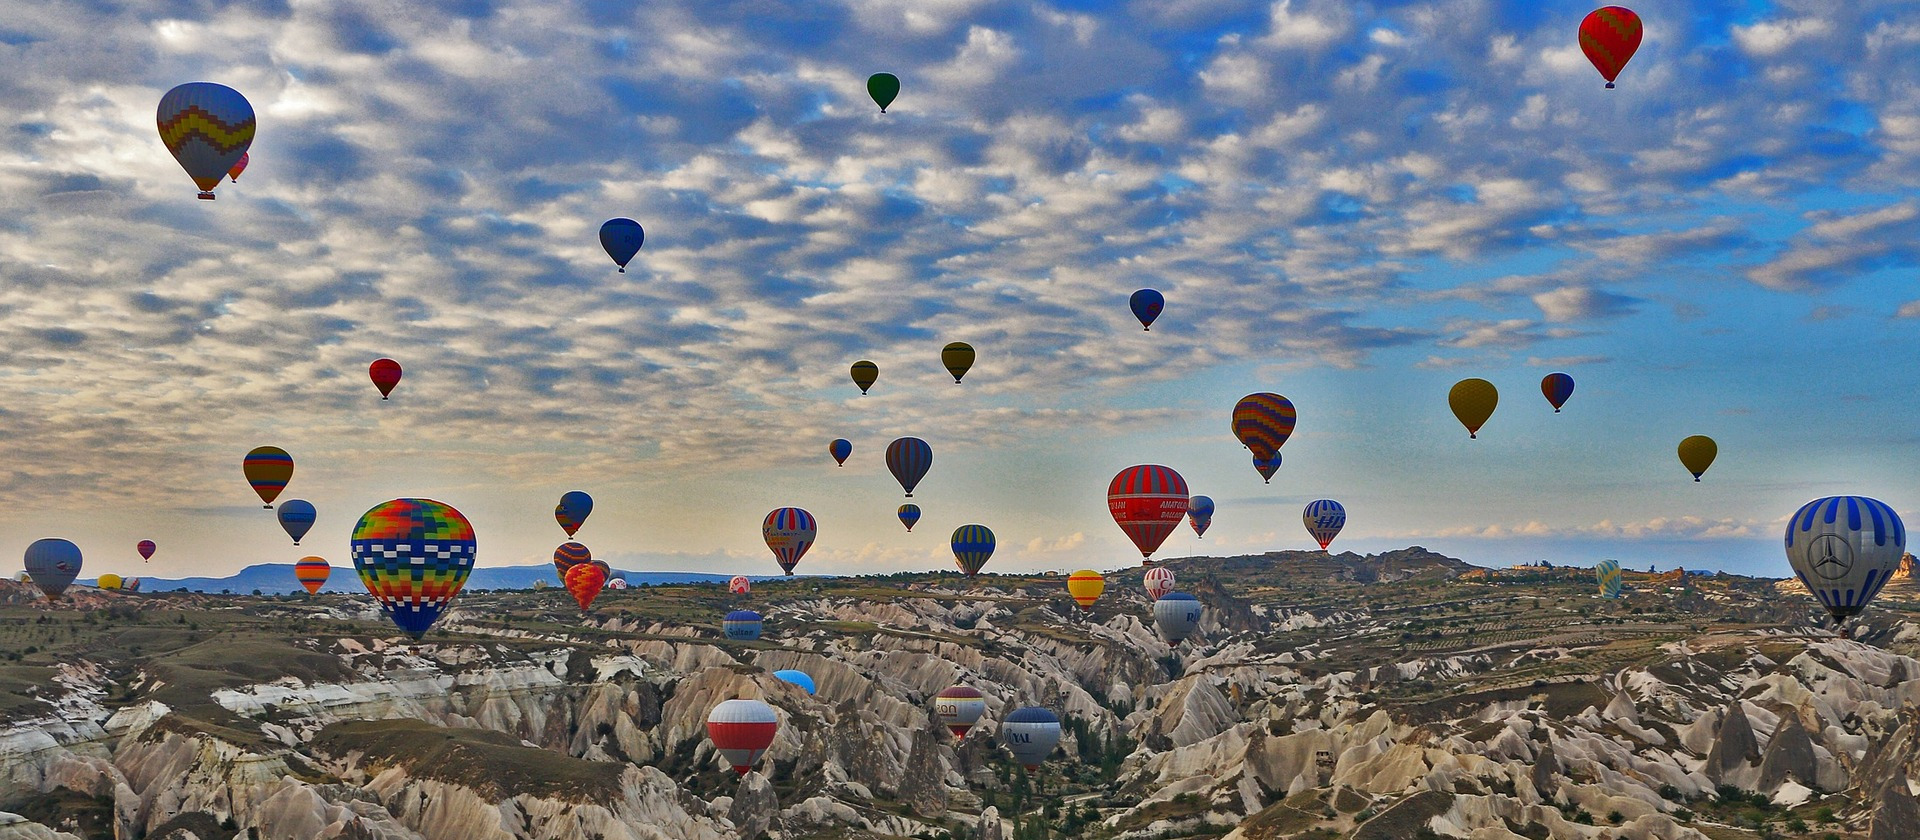 Sky full of balloons in Cappadocia, Turkey